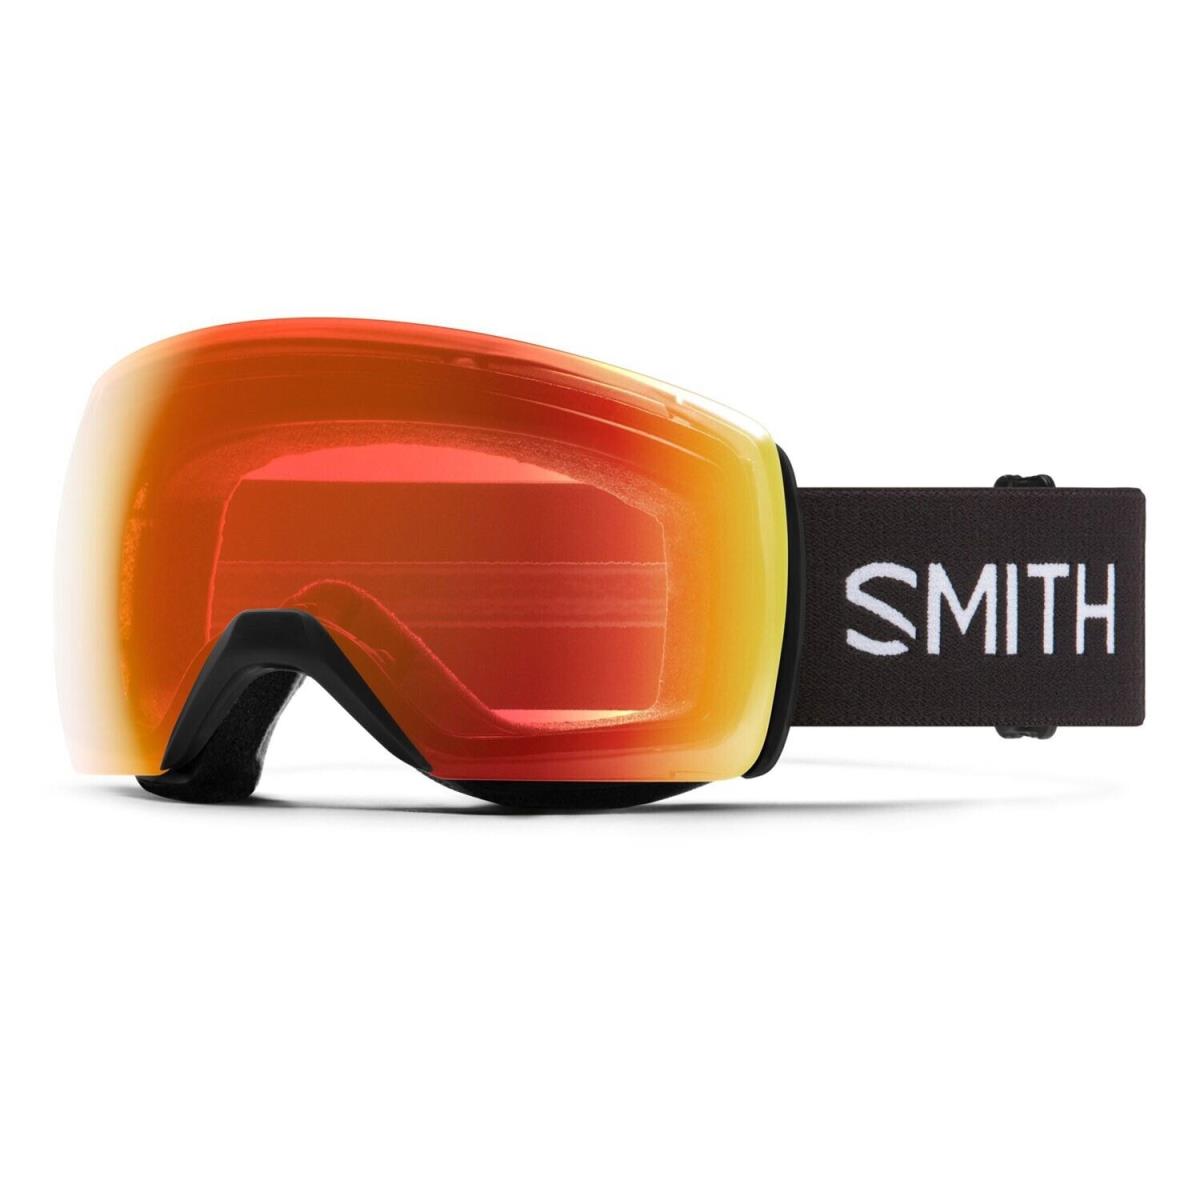 Smith Skyline XL Ski / Snow Goggles Black Frame Everyday Red Mirror Lens